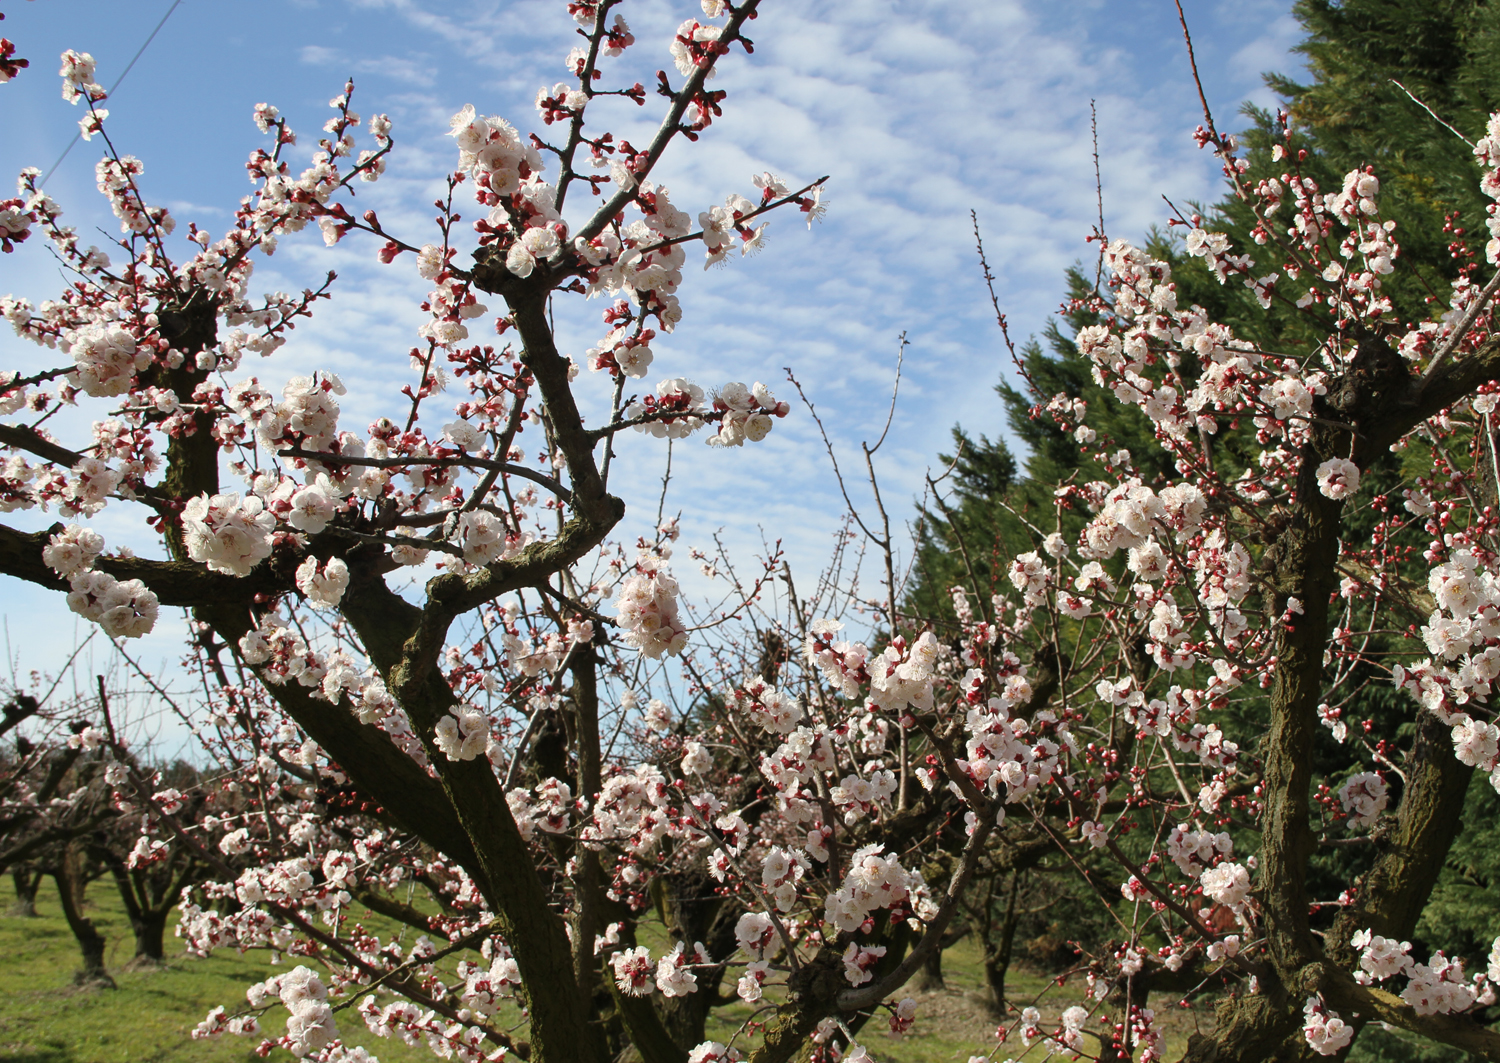   Aprikosenblüte - ein erfreuliches Motiv  